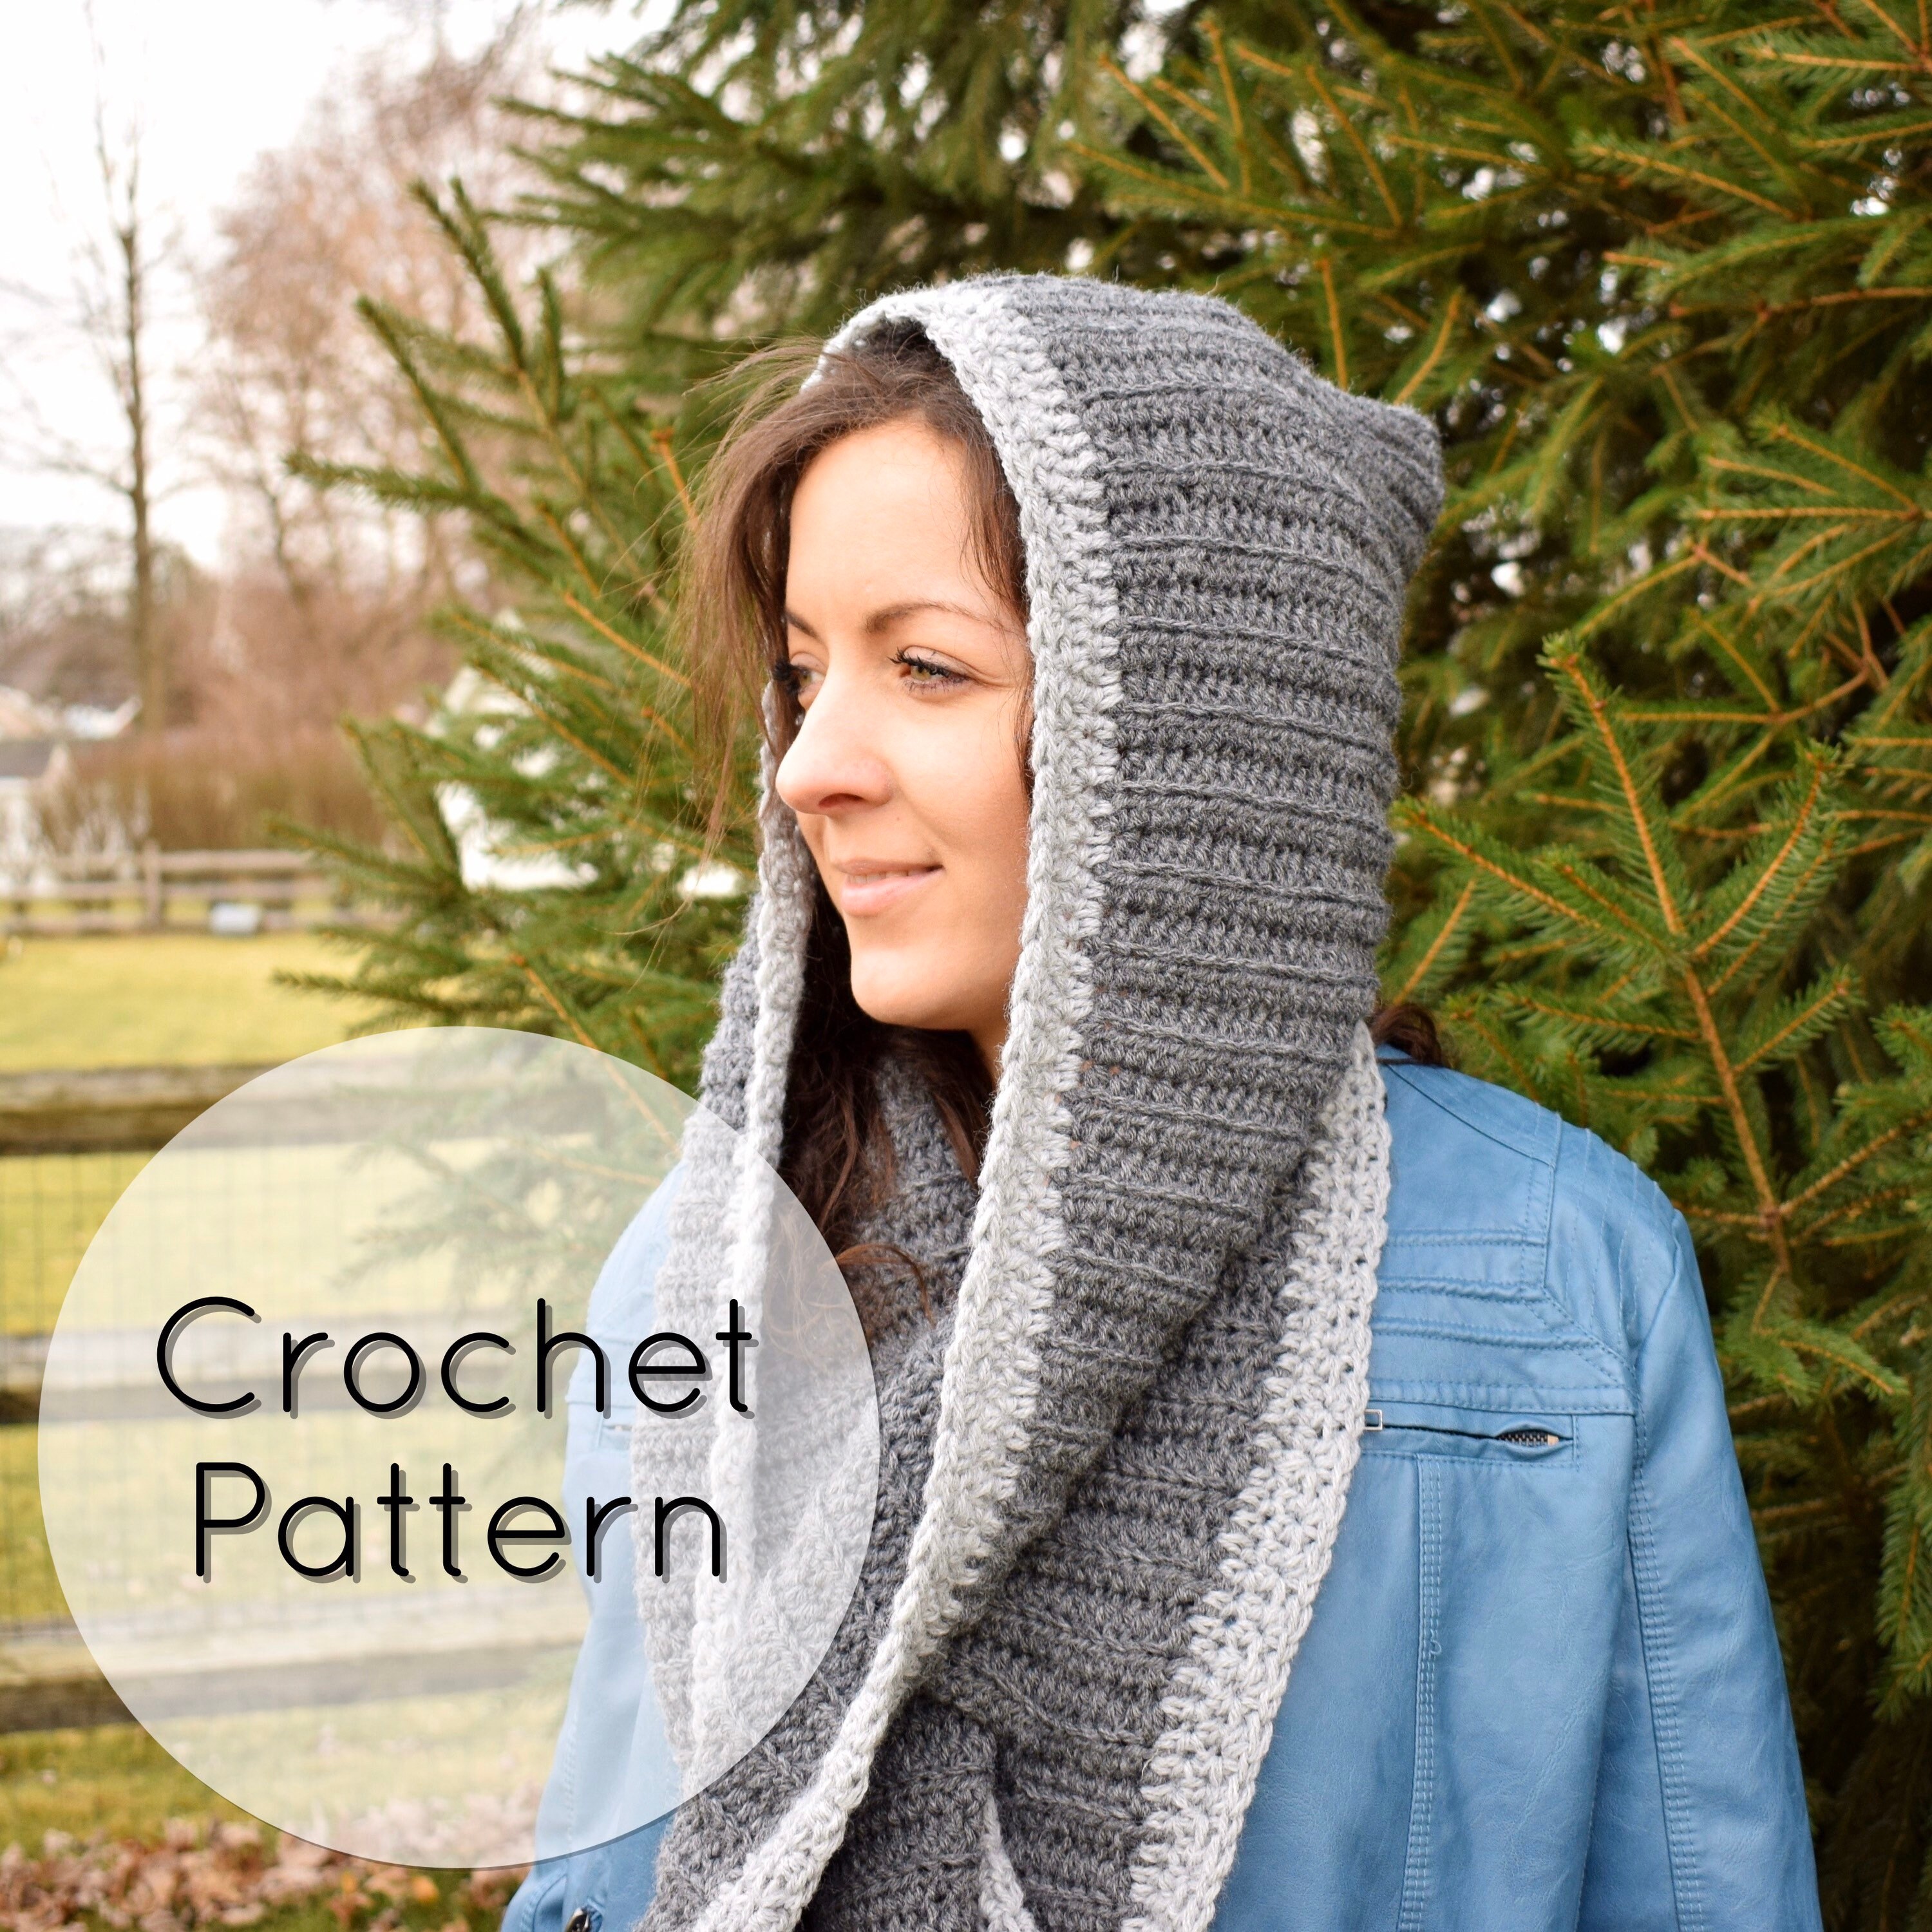 Lace Jewels Hooded Scarf Free Crochet Pattern - CrochetKim™